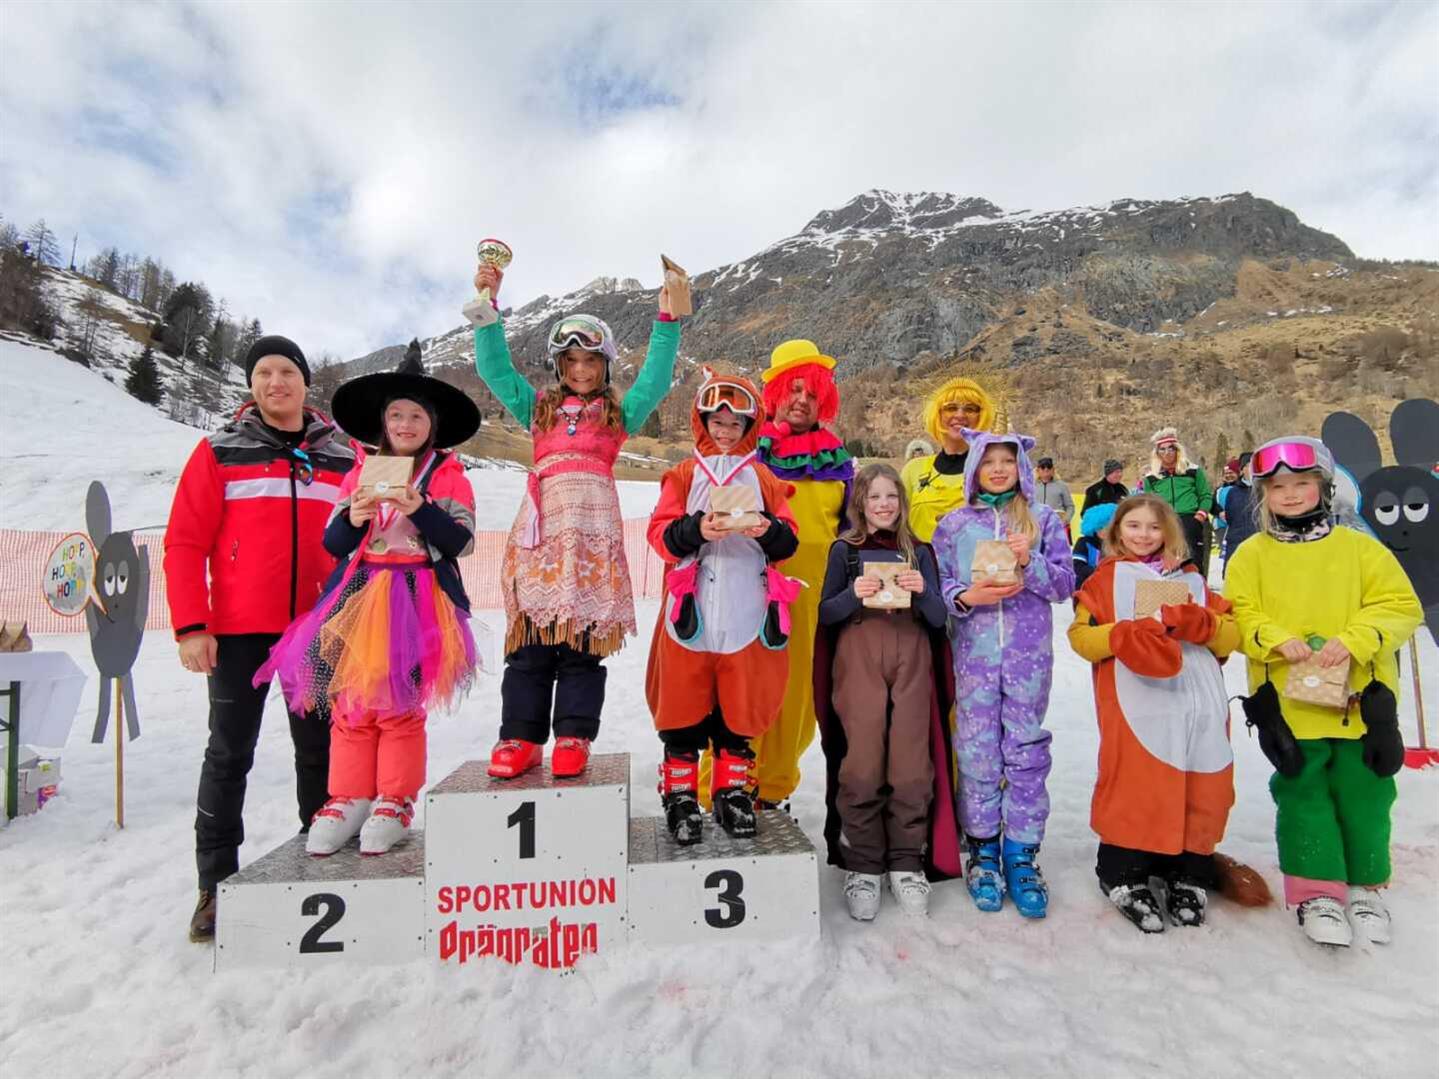 Eine Gruppe von Menschen posiert für ein Foto auf einem verschneiten Berg